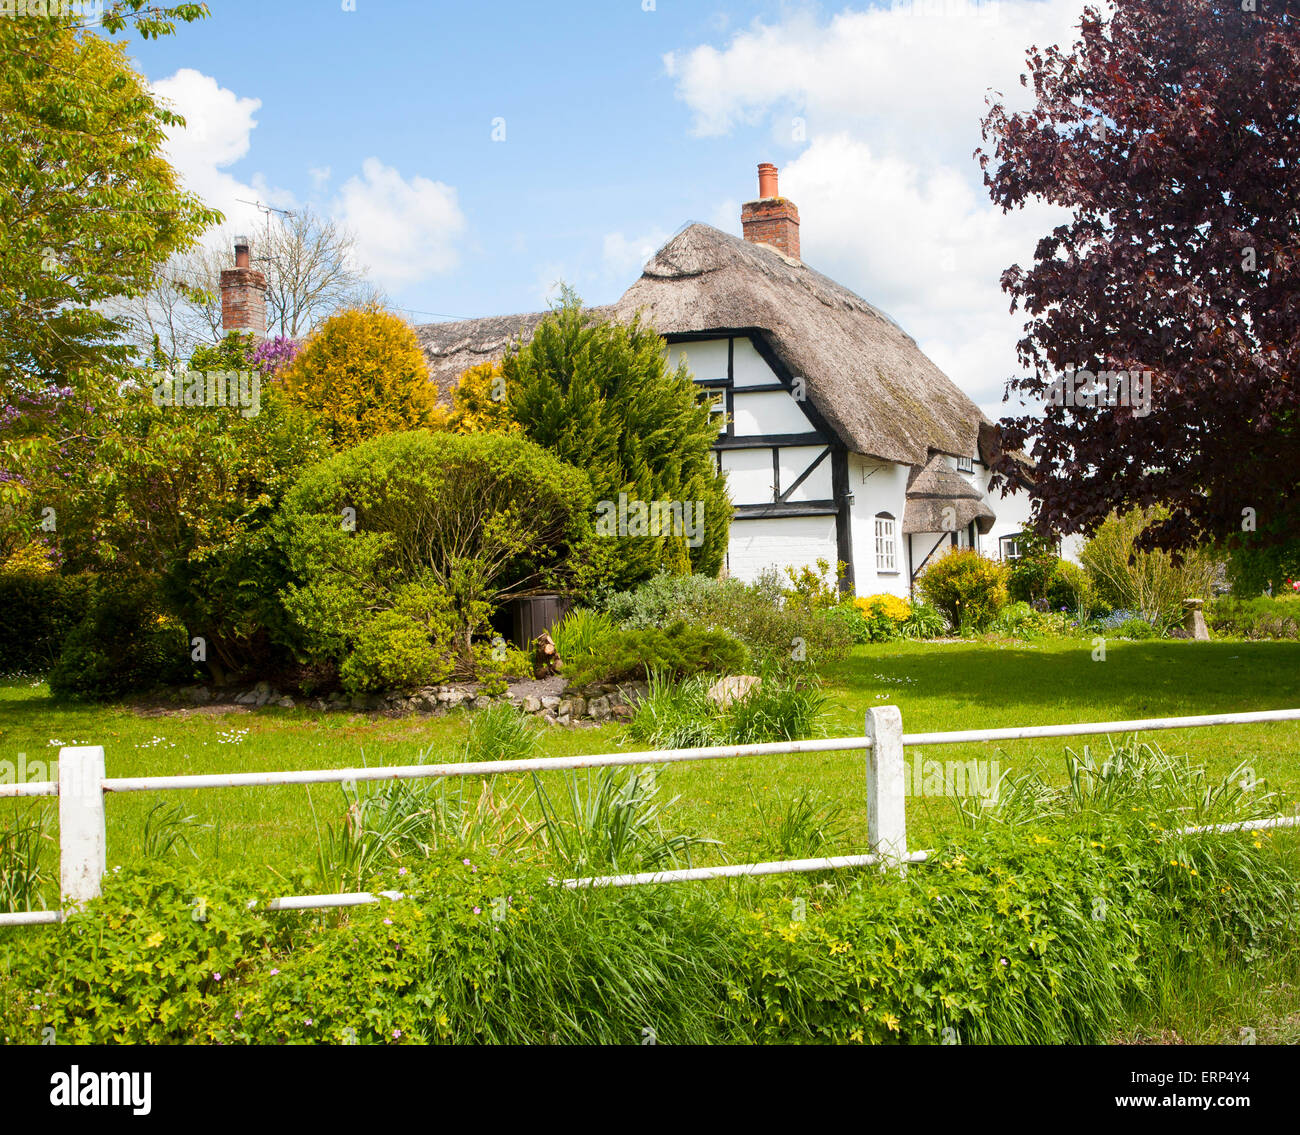 Joli chalet chaume dans le village d'Allington, Wiltshire, England, UK Banque D'Images